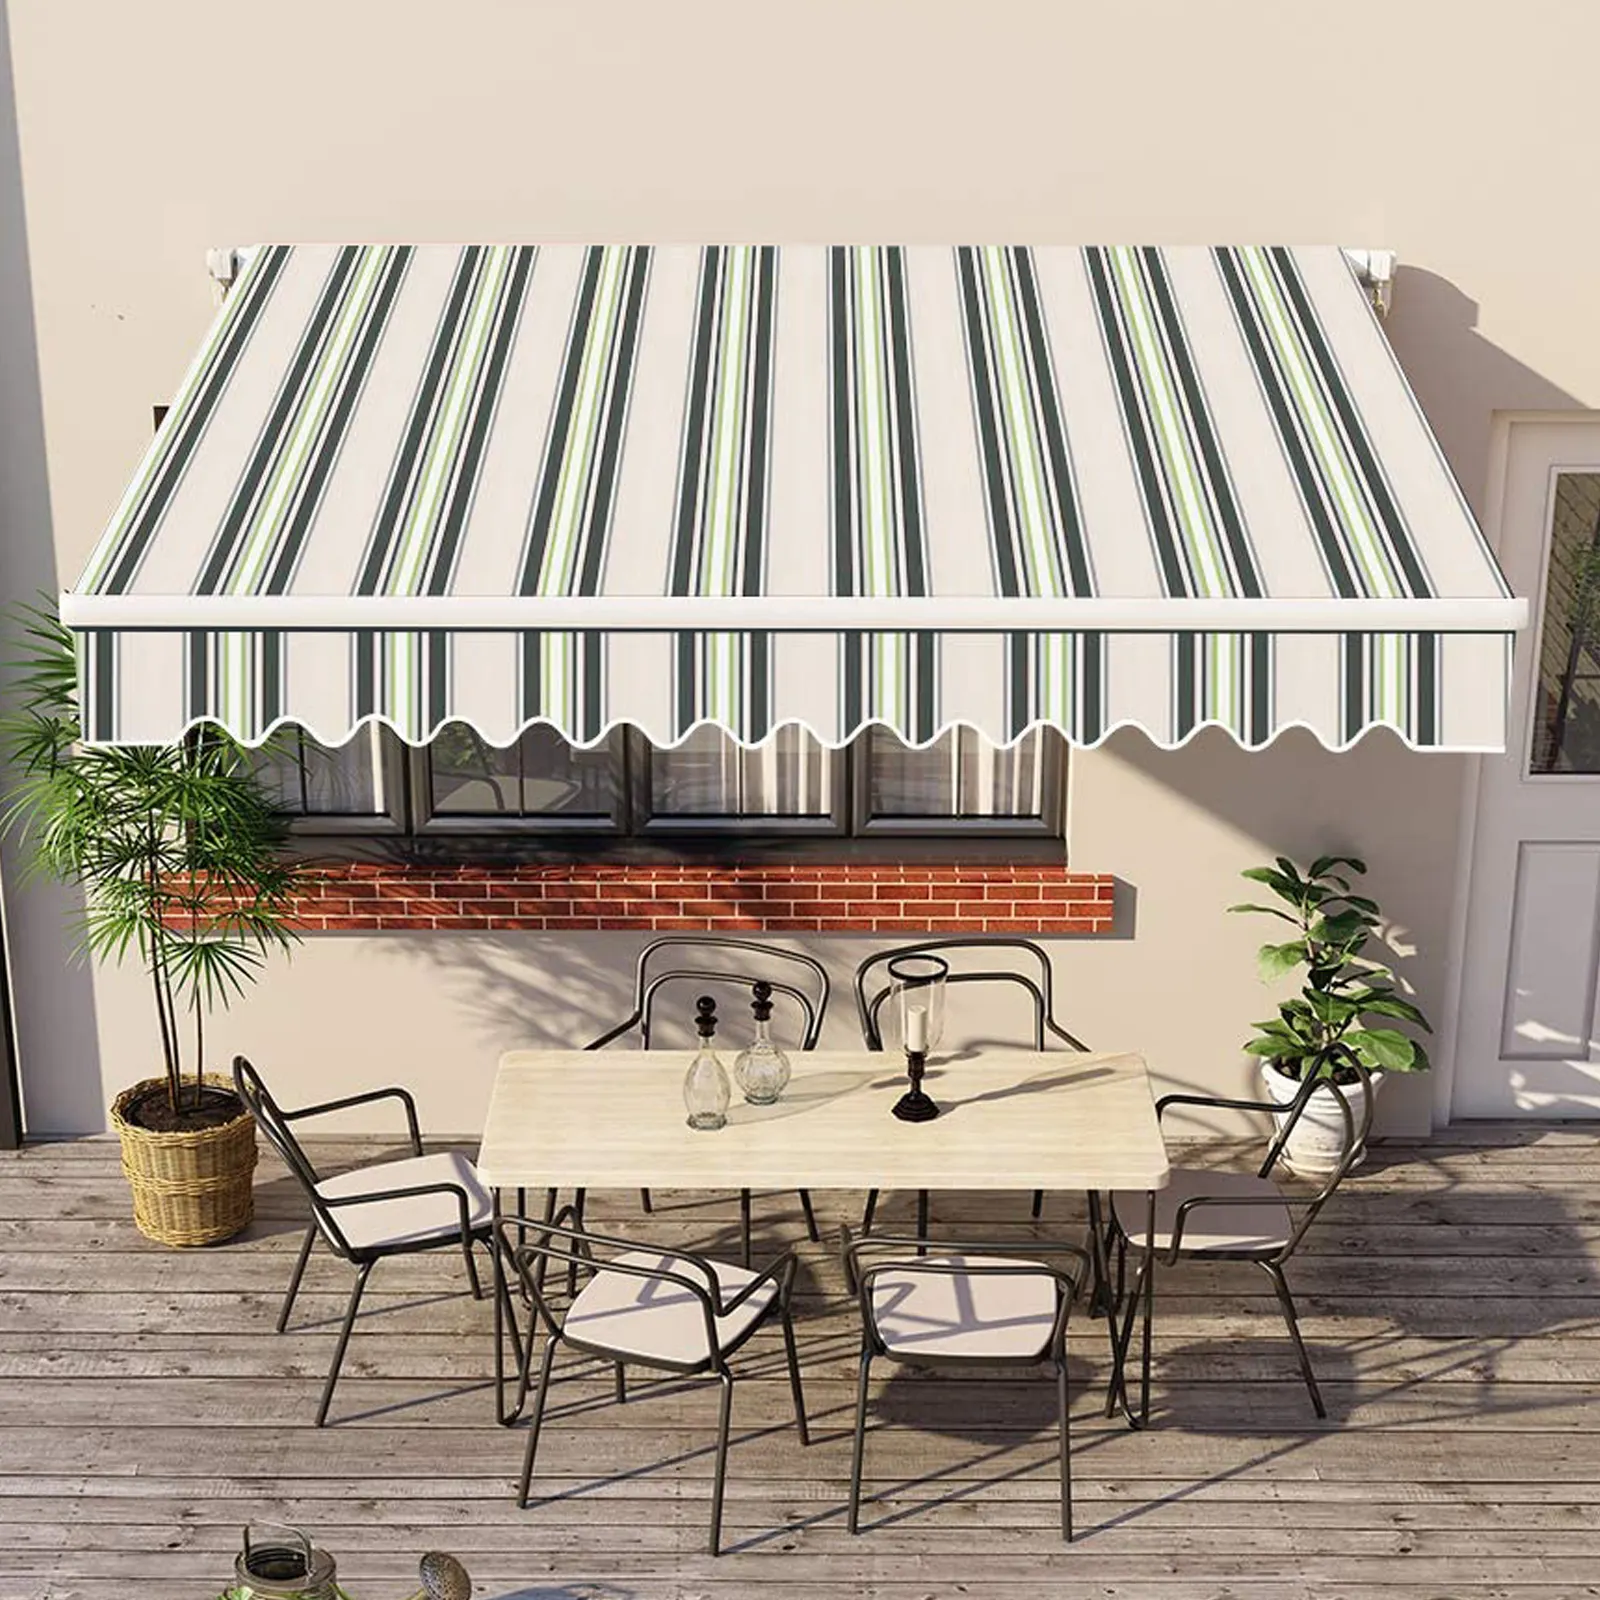 Tendalino retrattile manuale di qualità Premium completamente assemblato tettoia parasole UV per cortile balcone negozio bar bar Deck